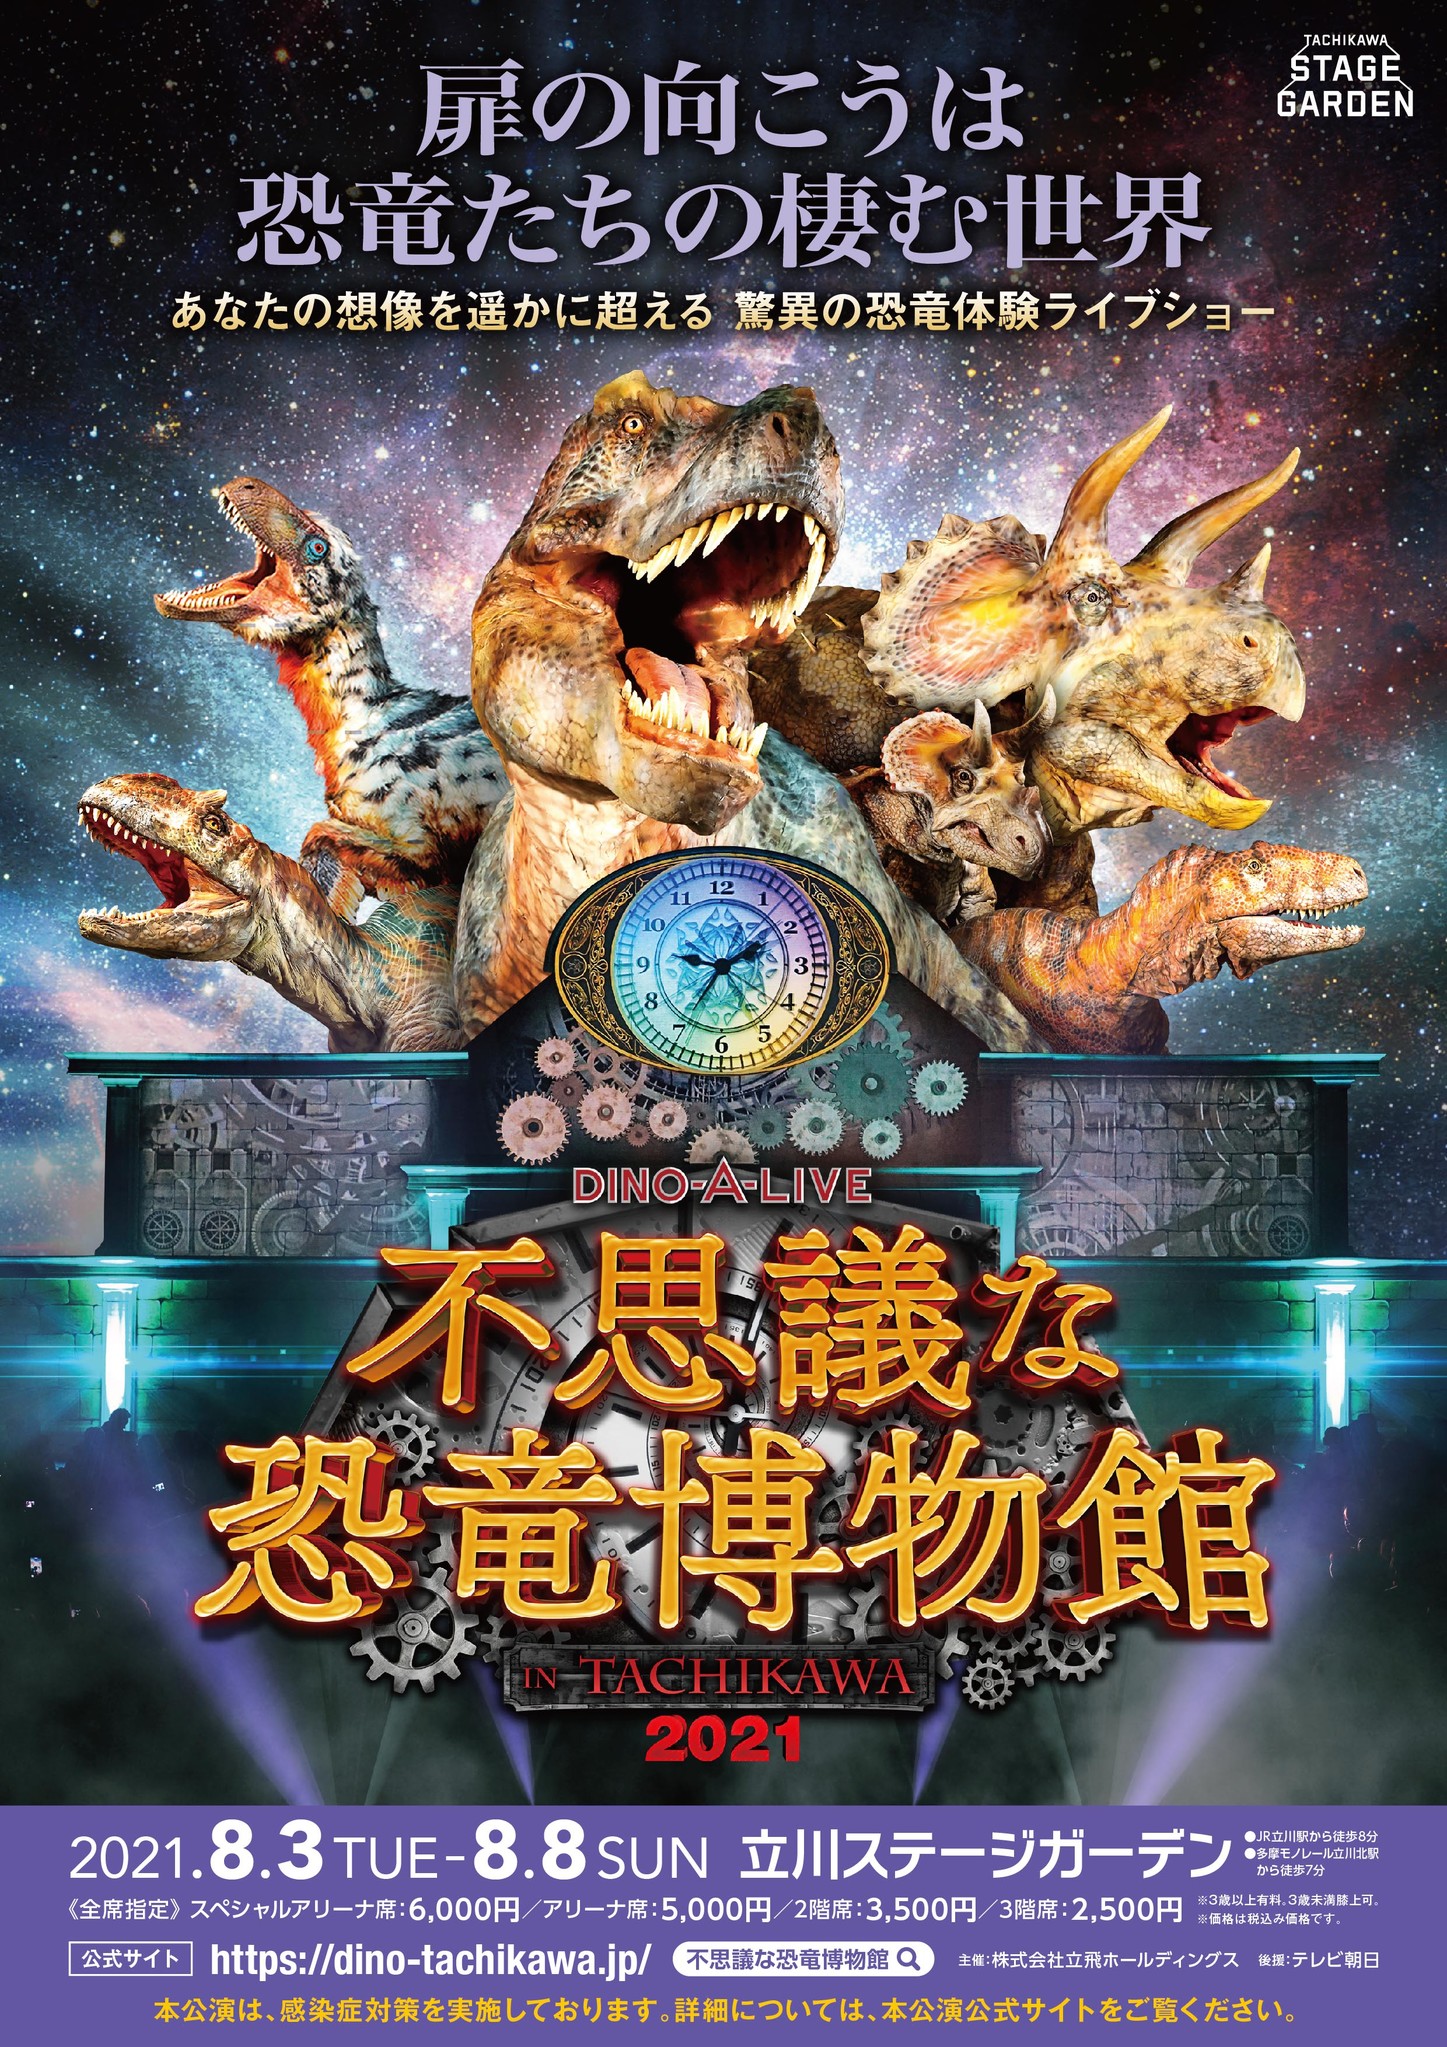 あなたの想像を遥かに超える驚異の恐竜体験ライブショー 不思議な恐竜博物館 In Tachikawa 21 開催決定 株式会社on Artのプレスリリース